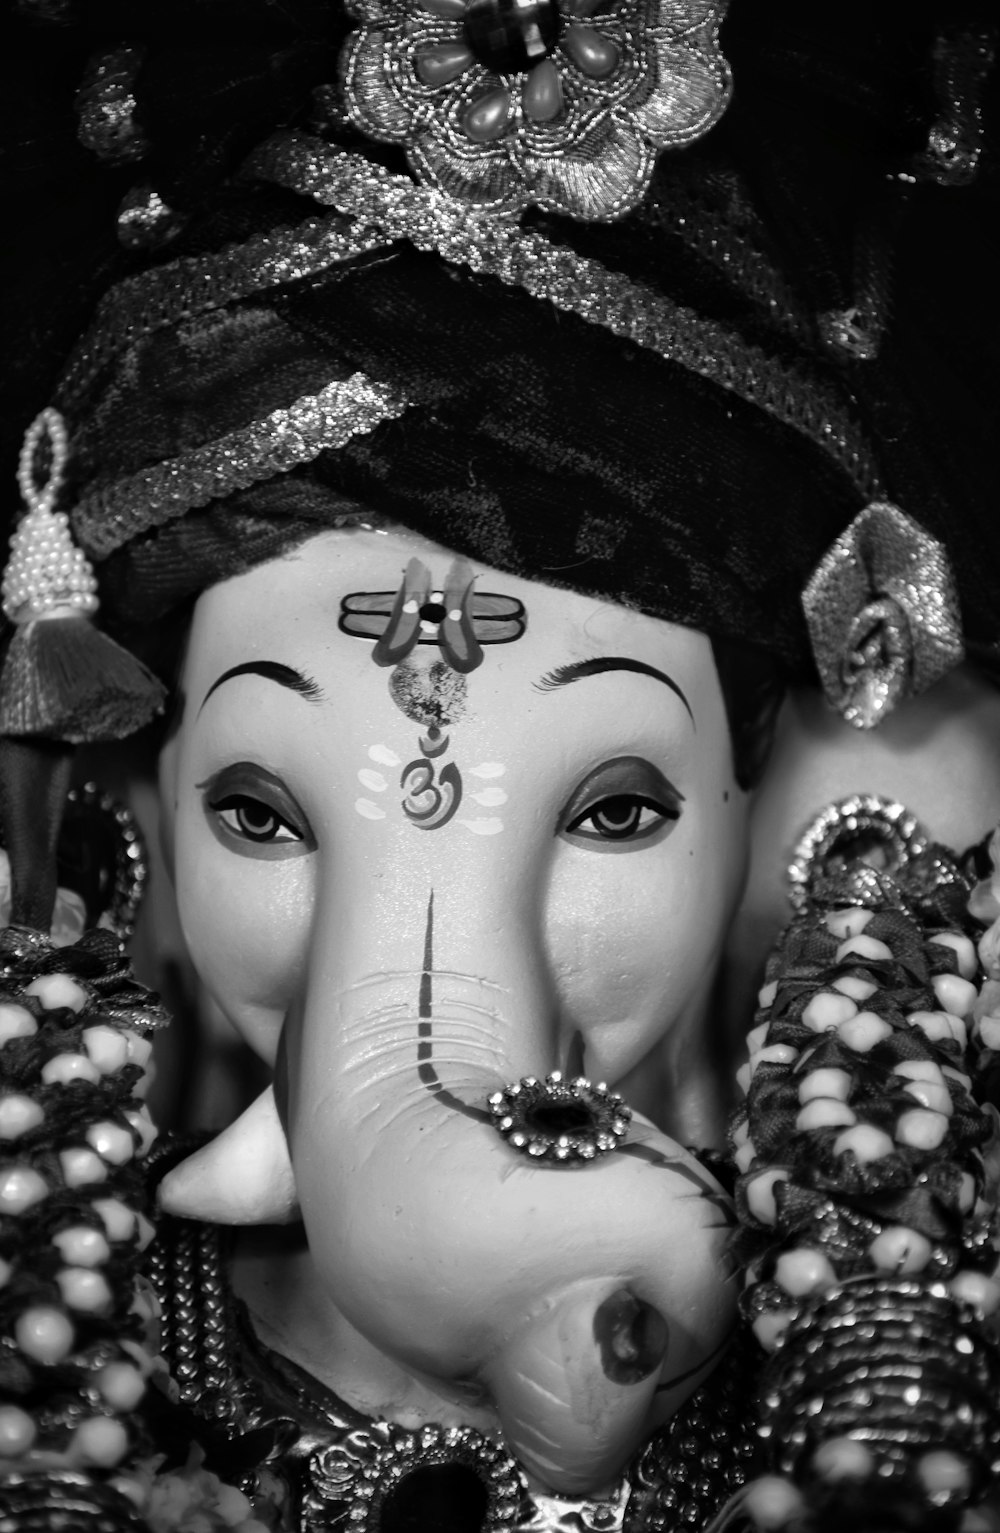 white and black hindu deity figurine photo – Free Grey Image on Unsplash